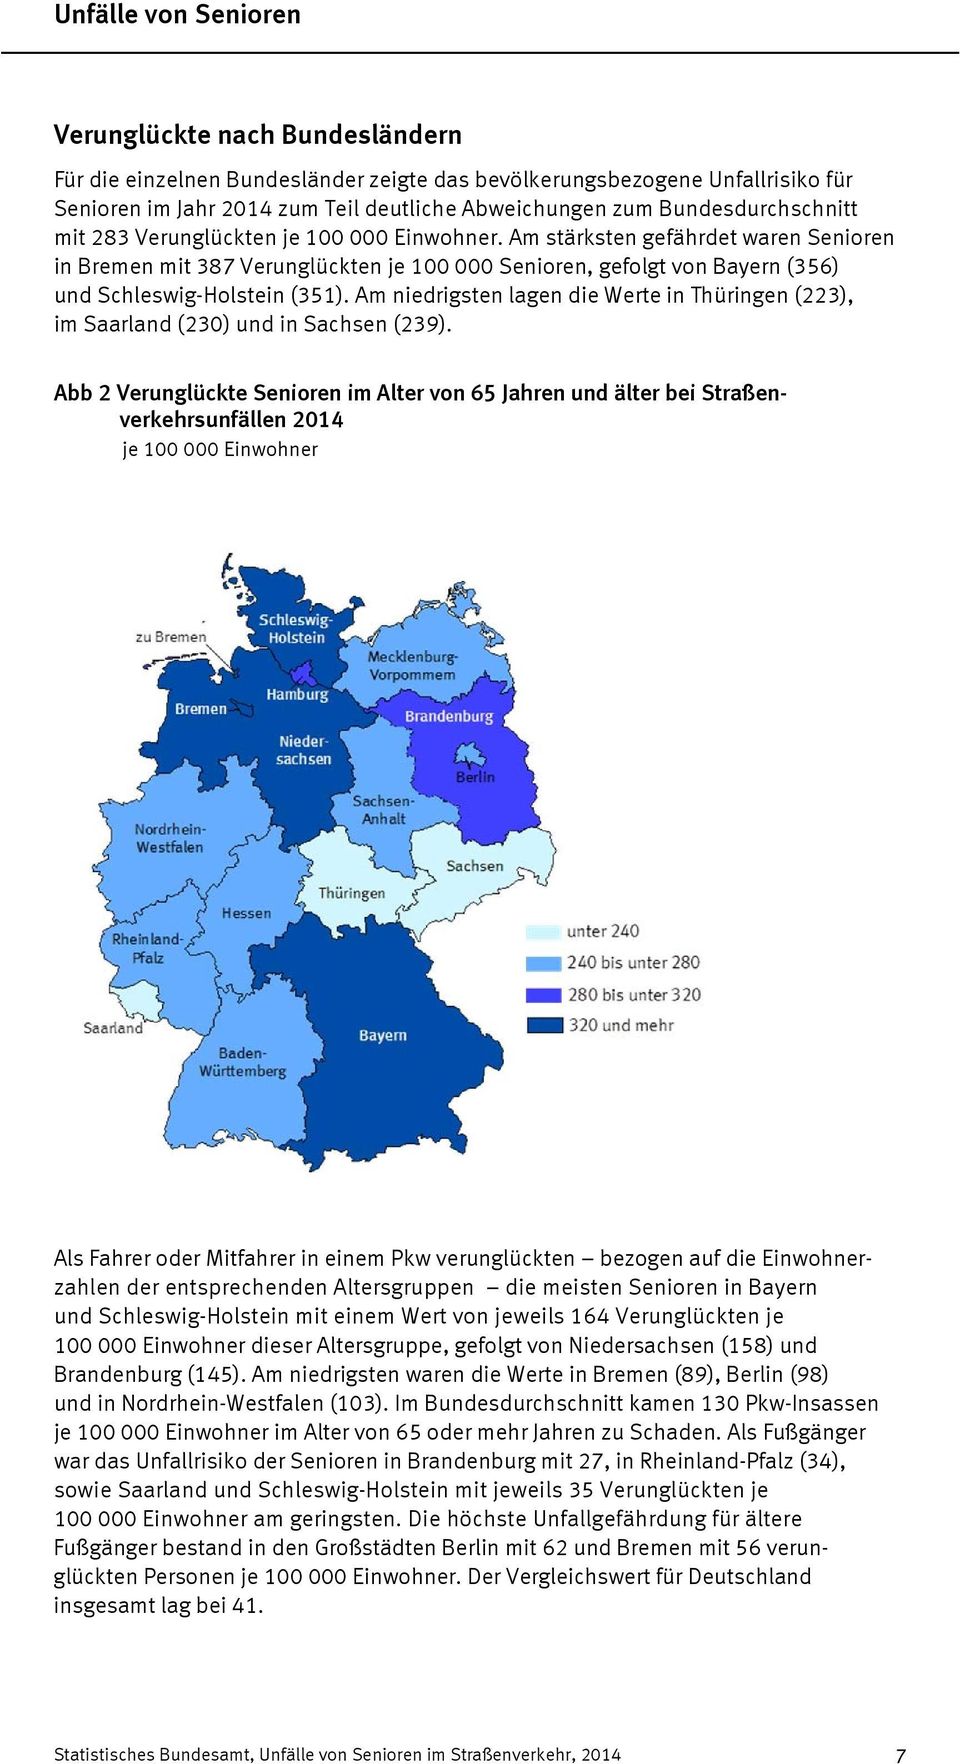 Am stärksten gefährdet waren Senioren in Bremen mit 387 Verunglückten je 100 000 Senioren, gefolgt von Bayern (356) und Schleswig-Holstein (351).